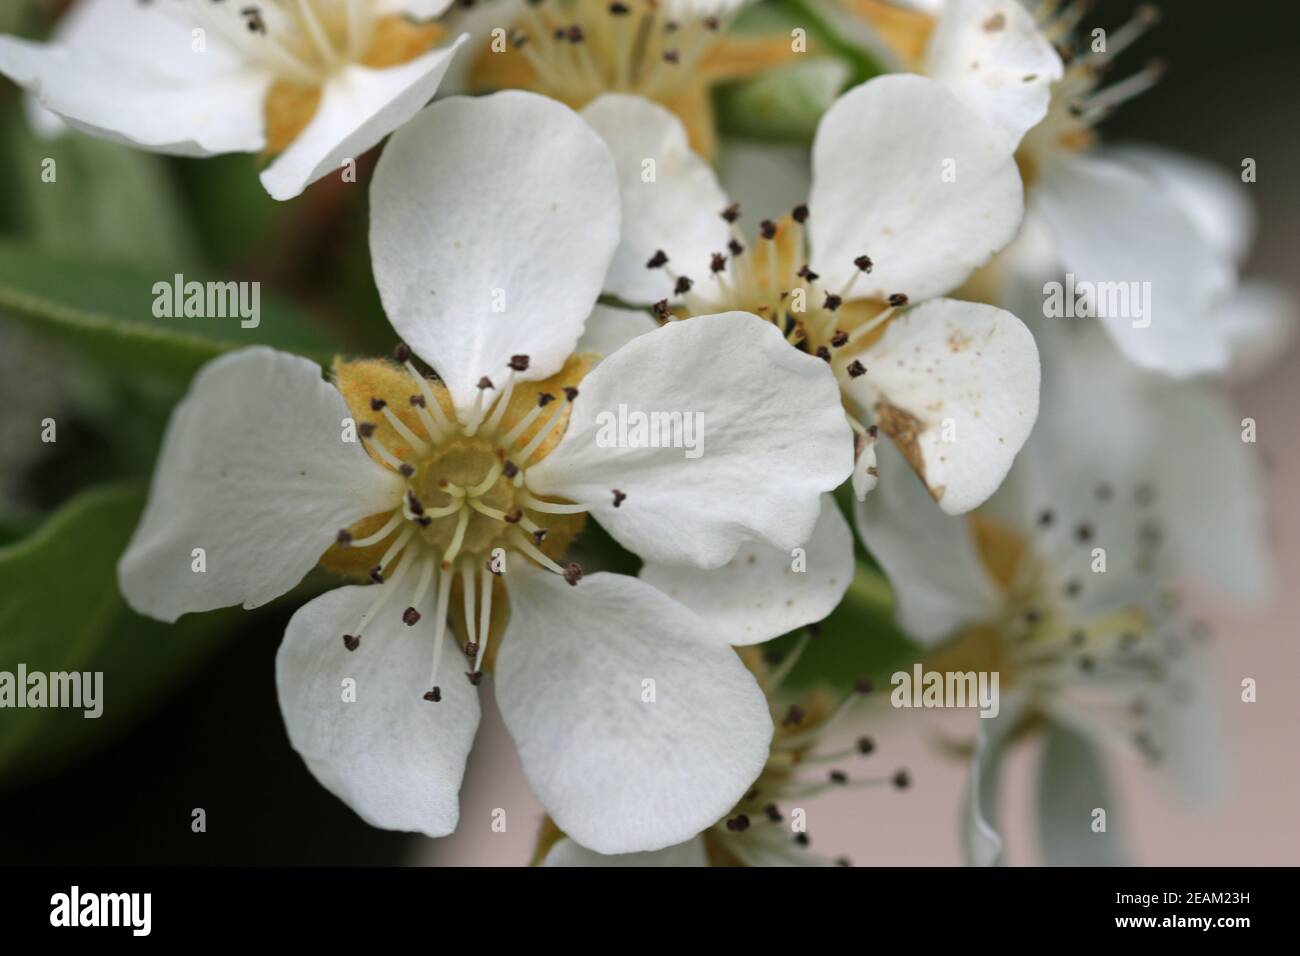 Pear tree blossom close up Stock Photo